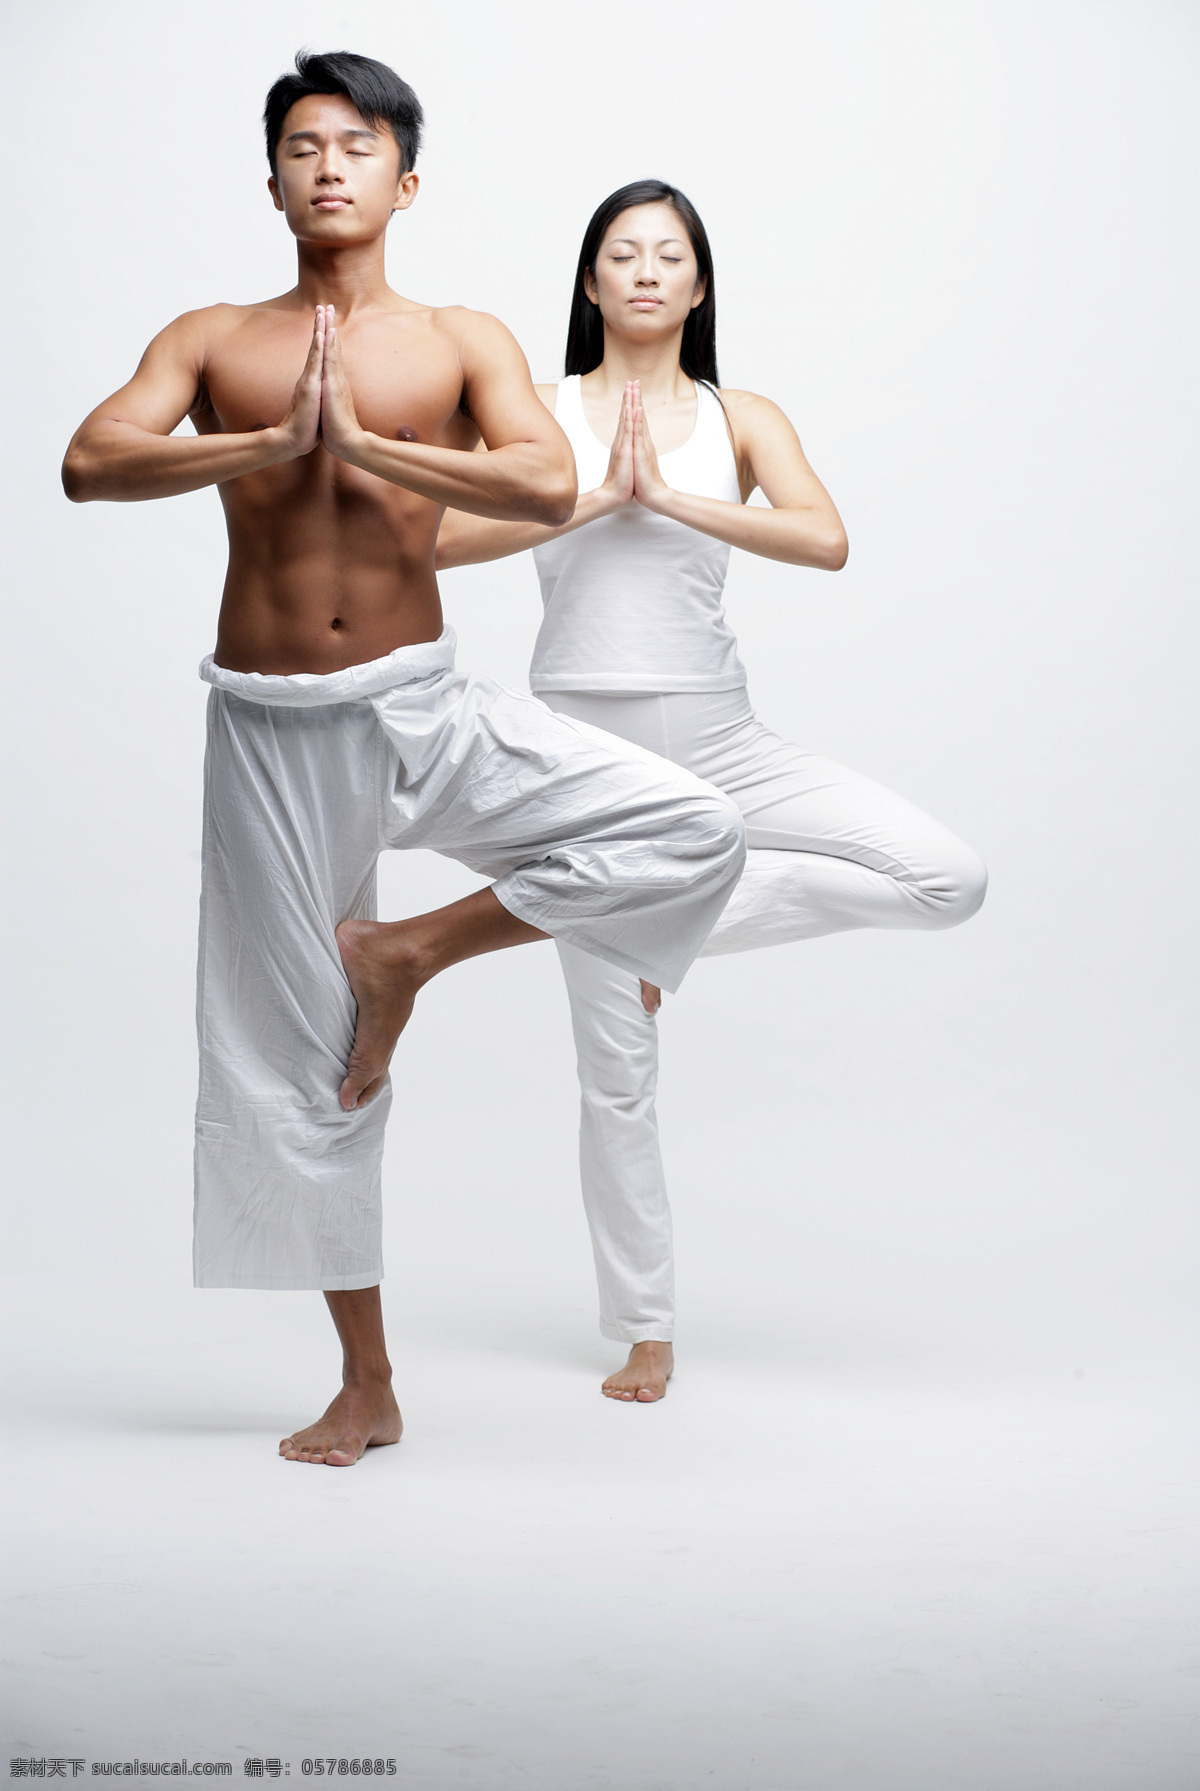 练 瑜伽 男女 人物 女性 男性 健康生活 修身养性 运动 单脚站立 平衡 双手合十 心静 心神合一 安静 闭眼 生活人物 人物图片